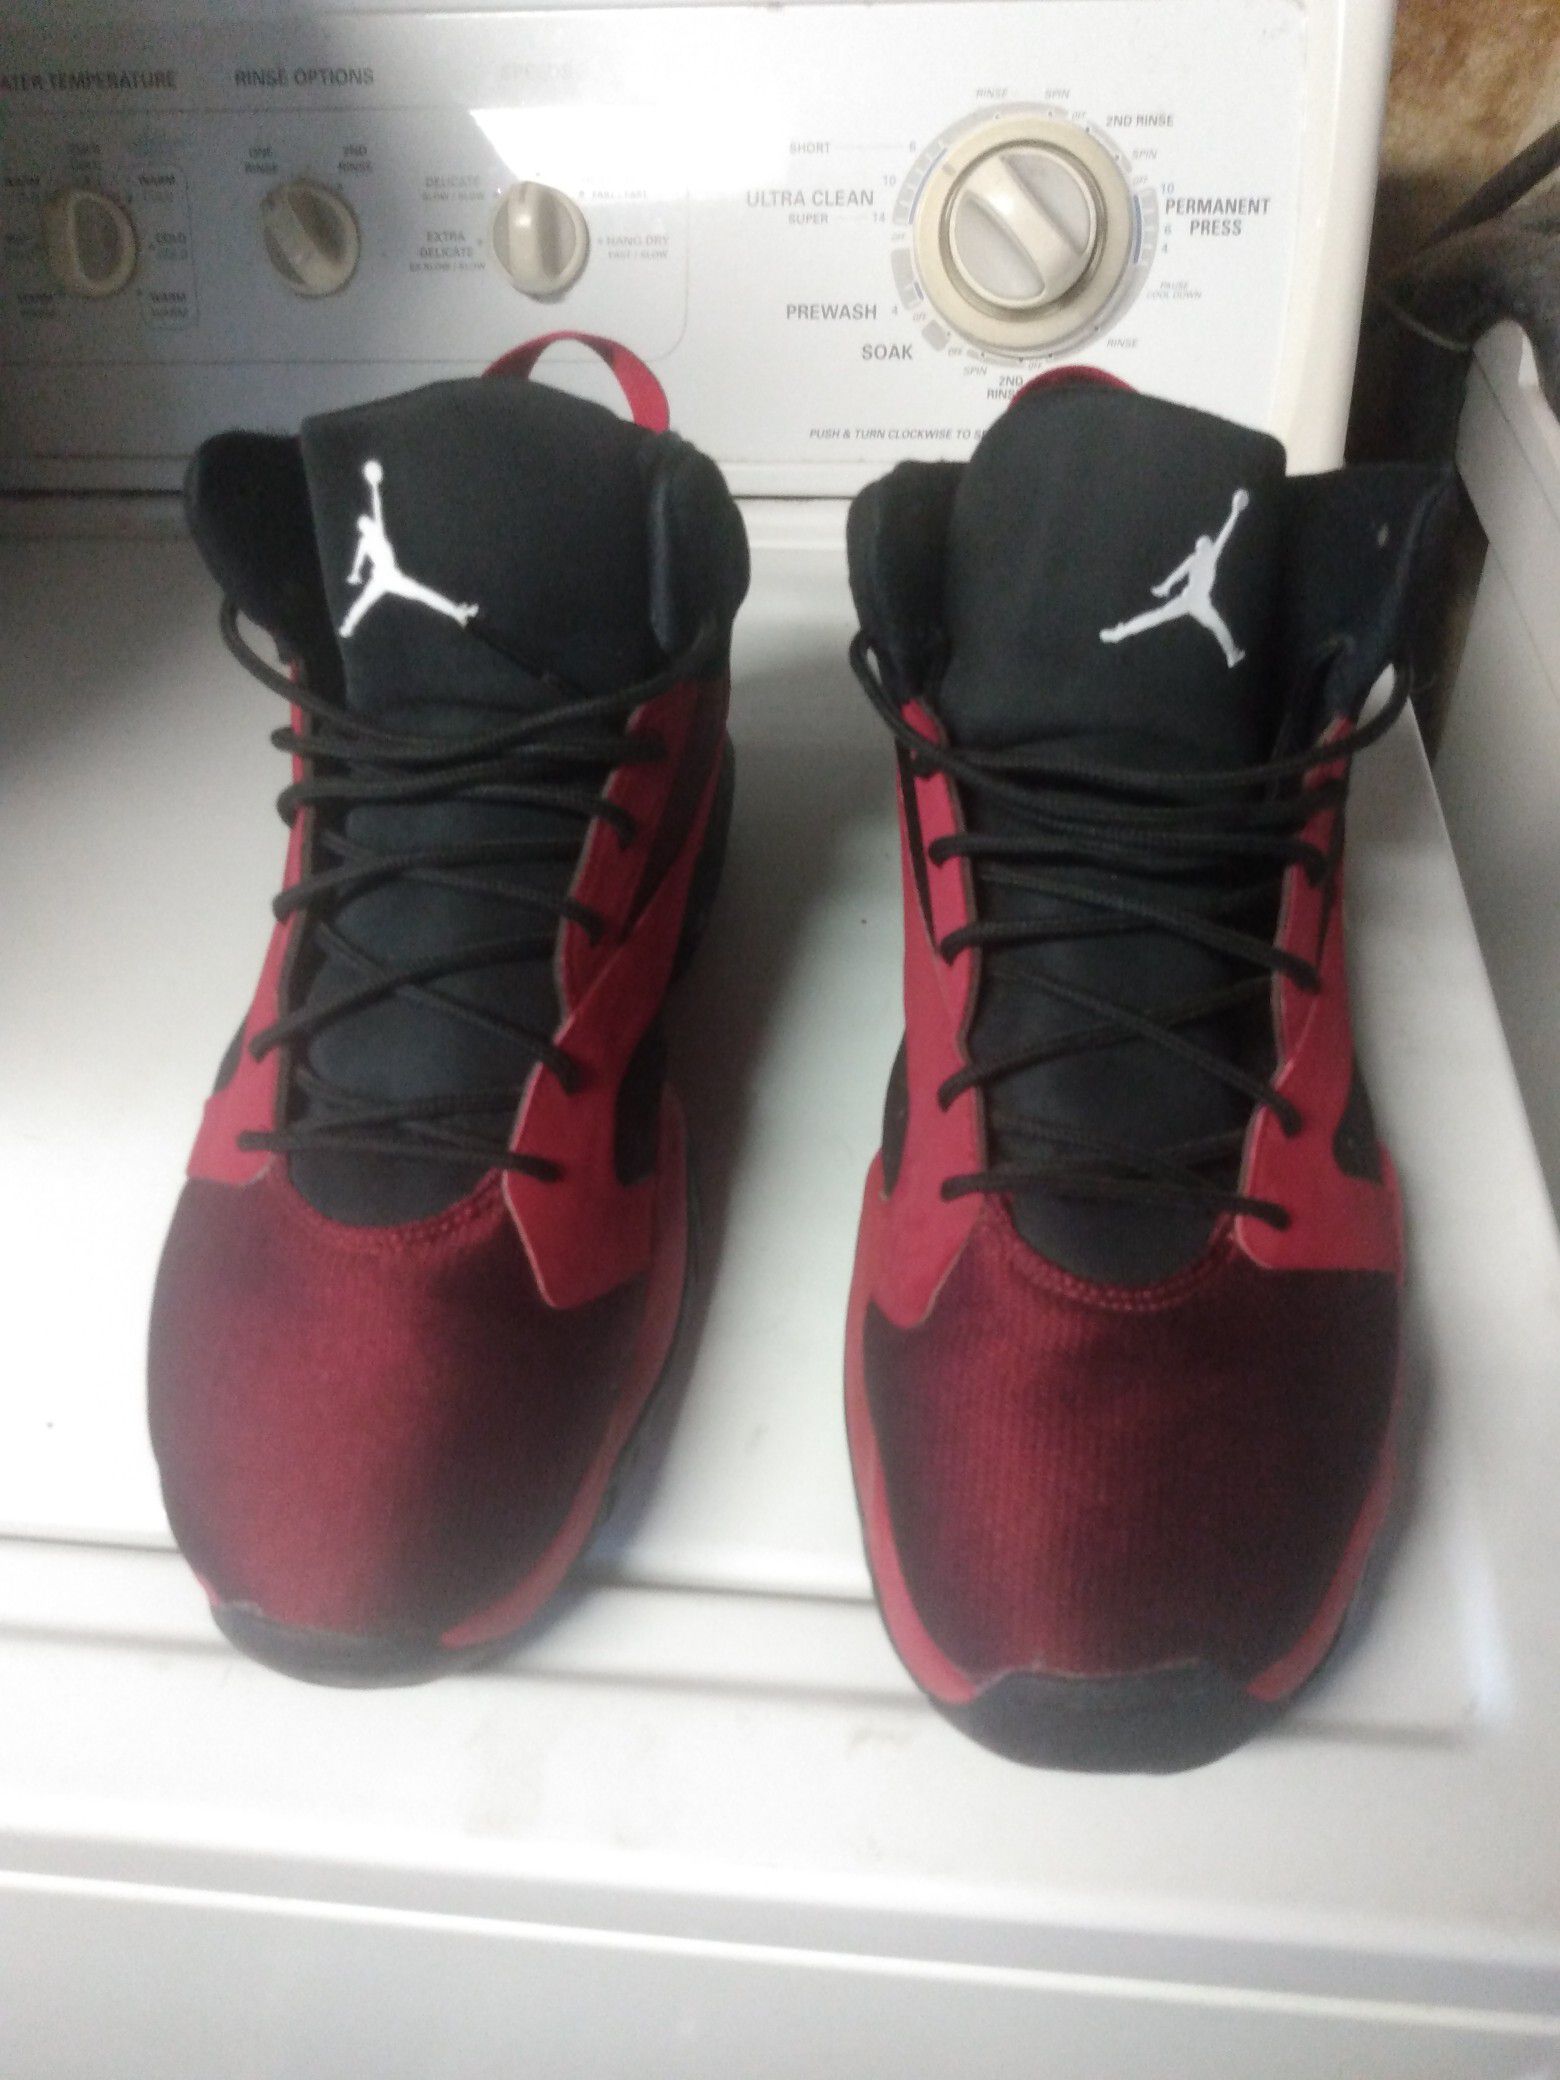 Jordans shoes